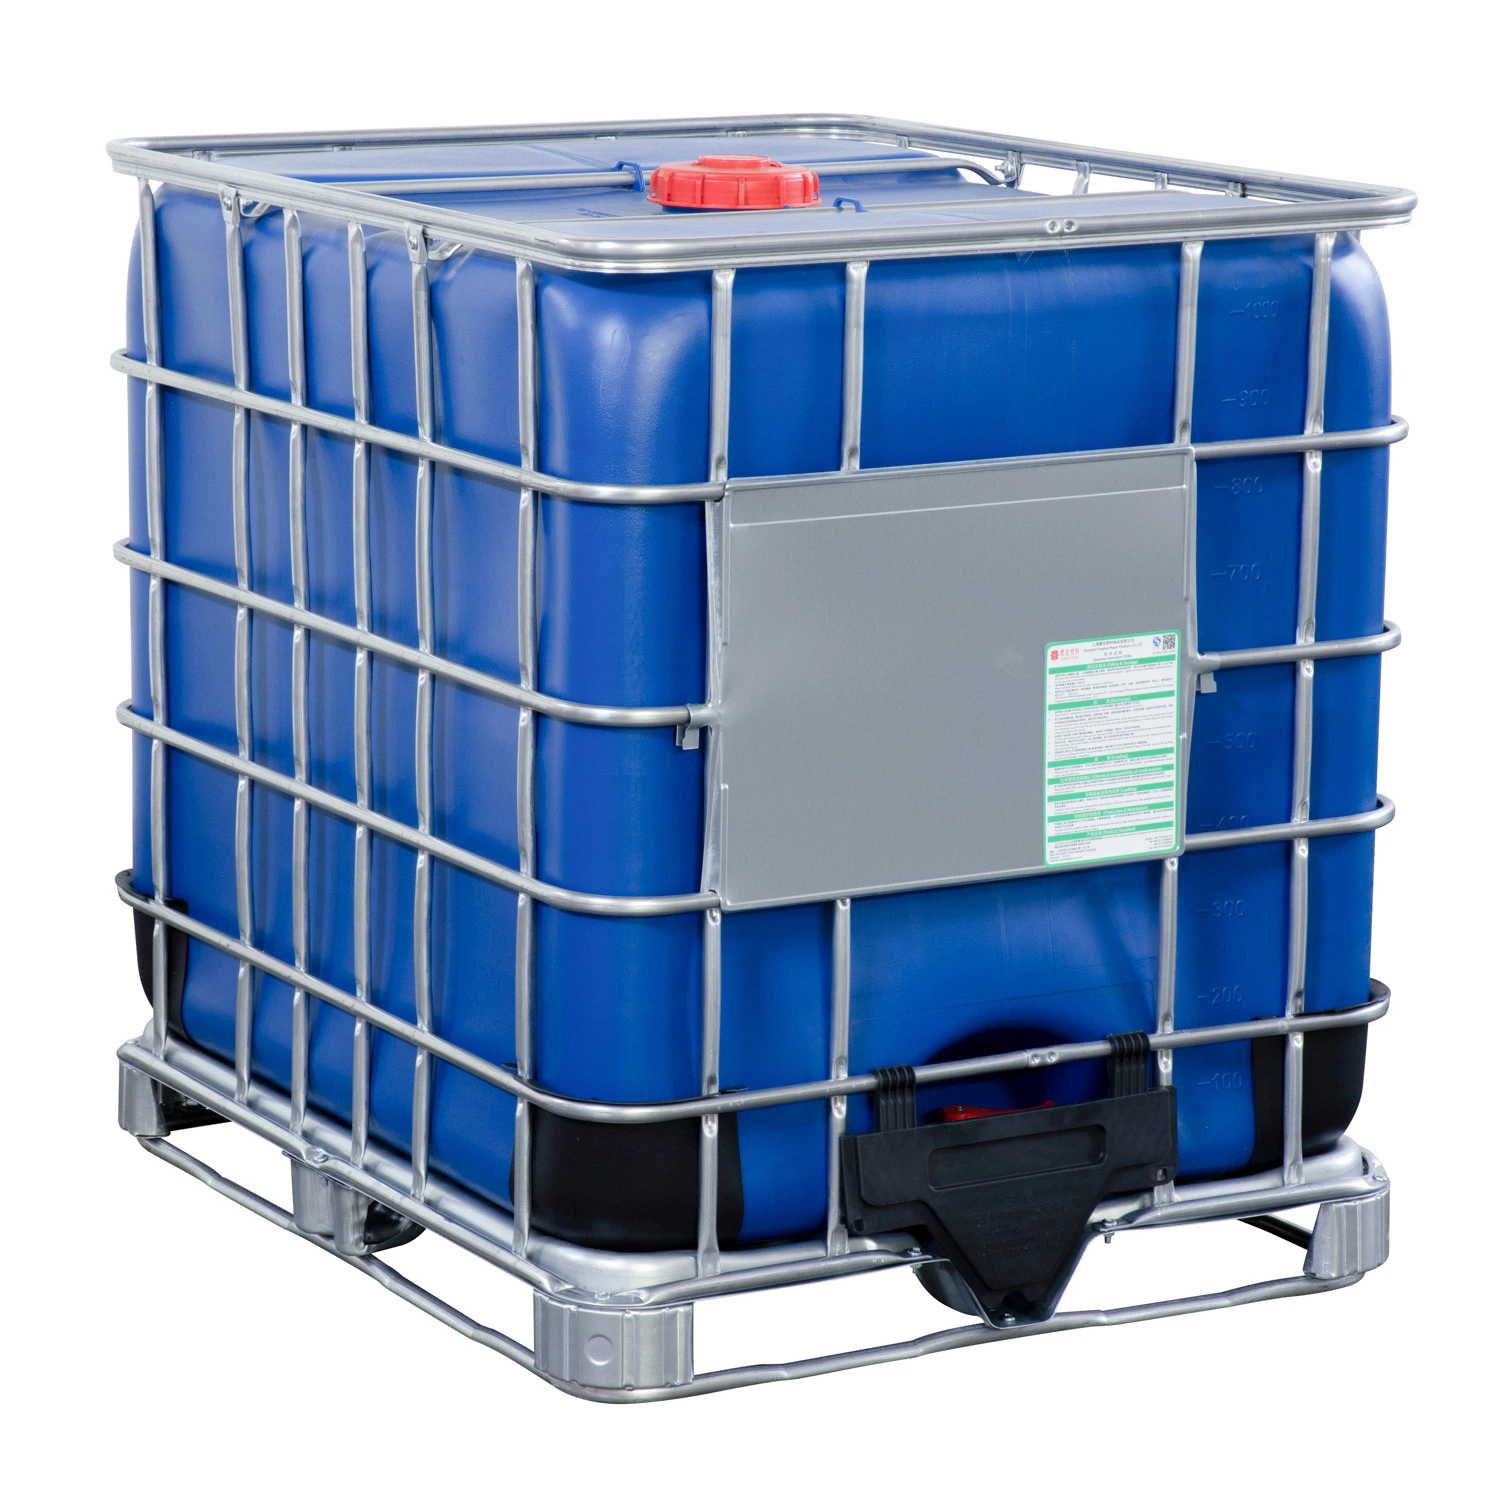 Depósito azul de 1000 litros para armazenamento de líquidos químicos